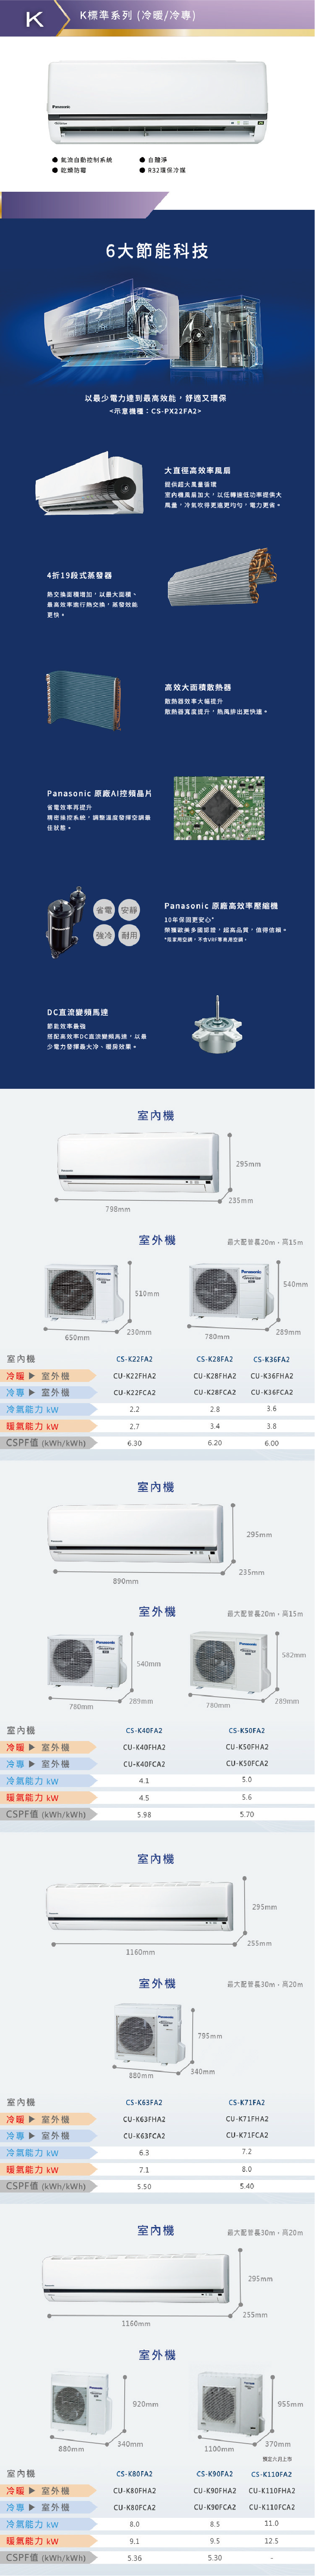 CU-K63FHA2 10坪適用 K系列 一對一 分離式 變頻 冷暖 冷氣 CS-K63FA2